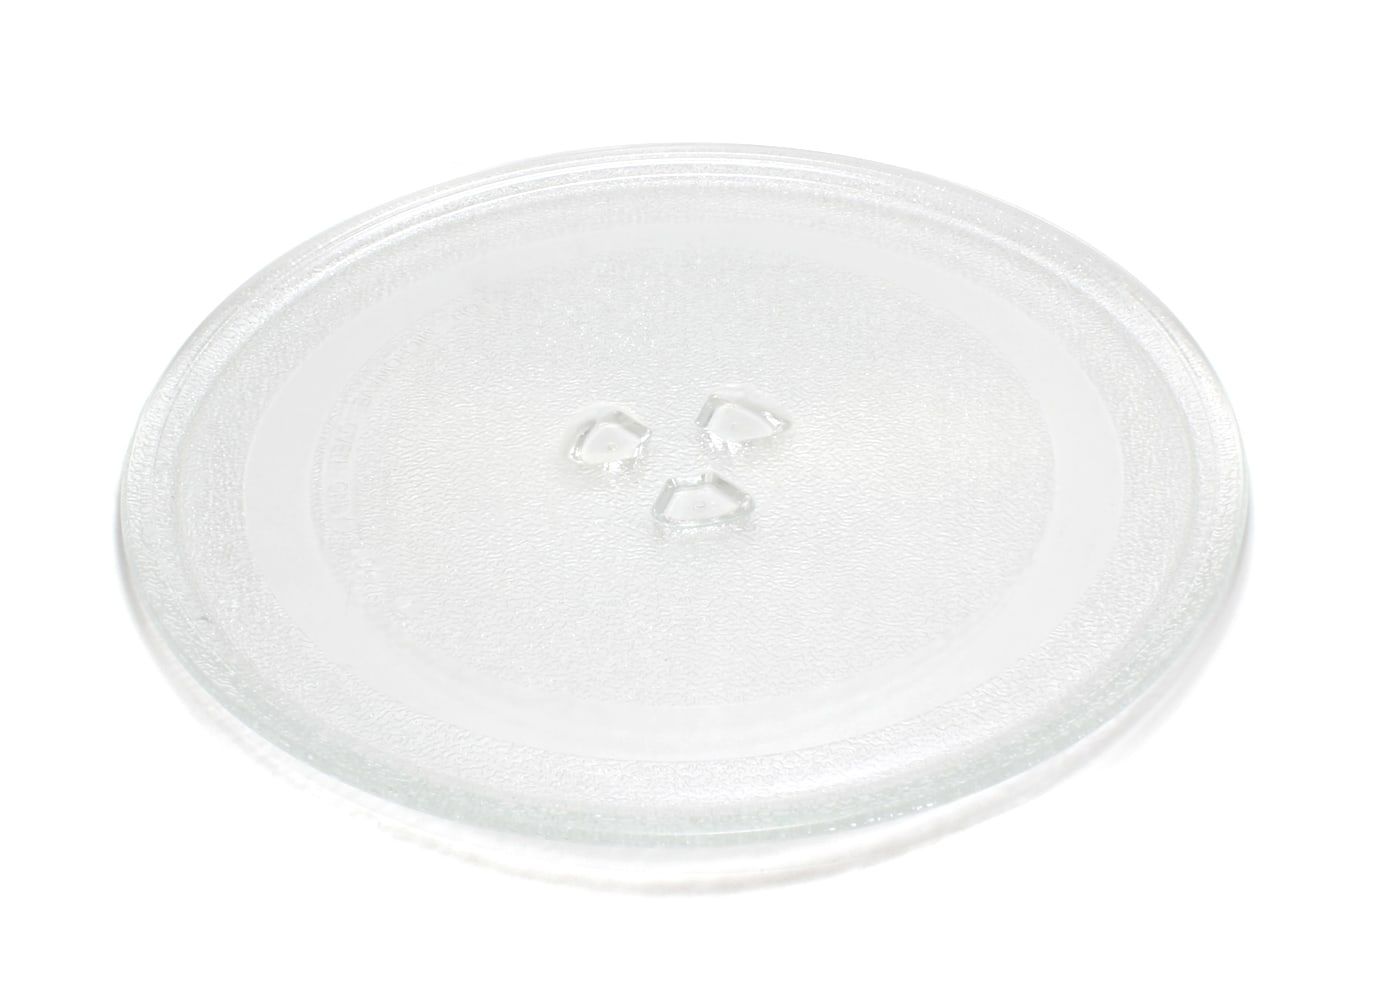 Тарелка для микроволновой печи Helpico 49PM005, MCW011UN тарелка для микроволновой печи eurokitchen n 01